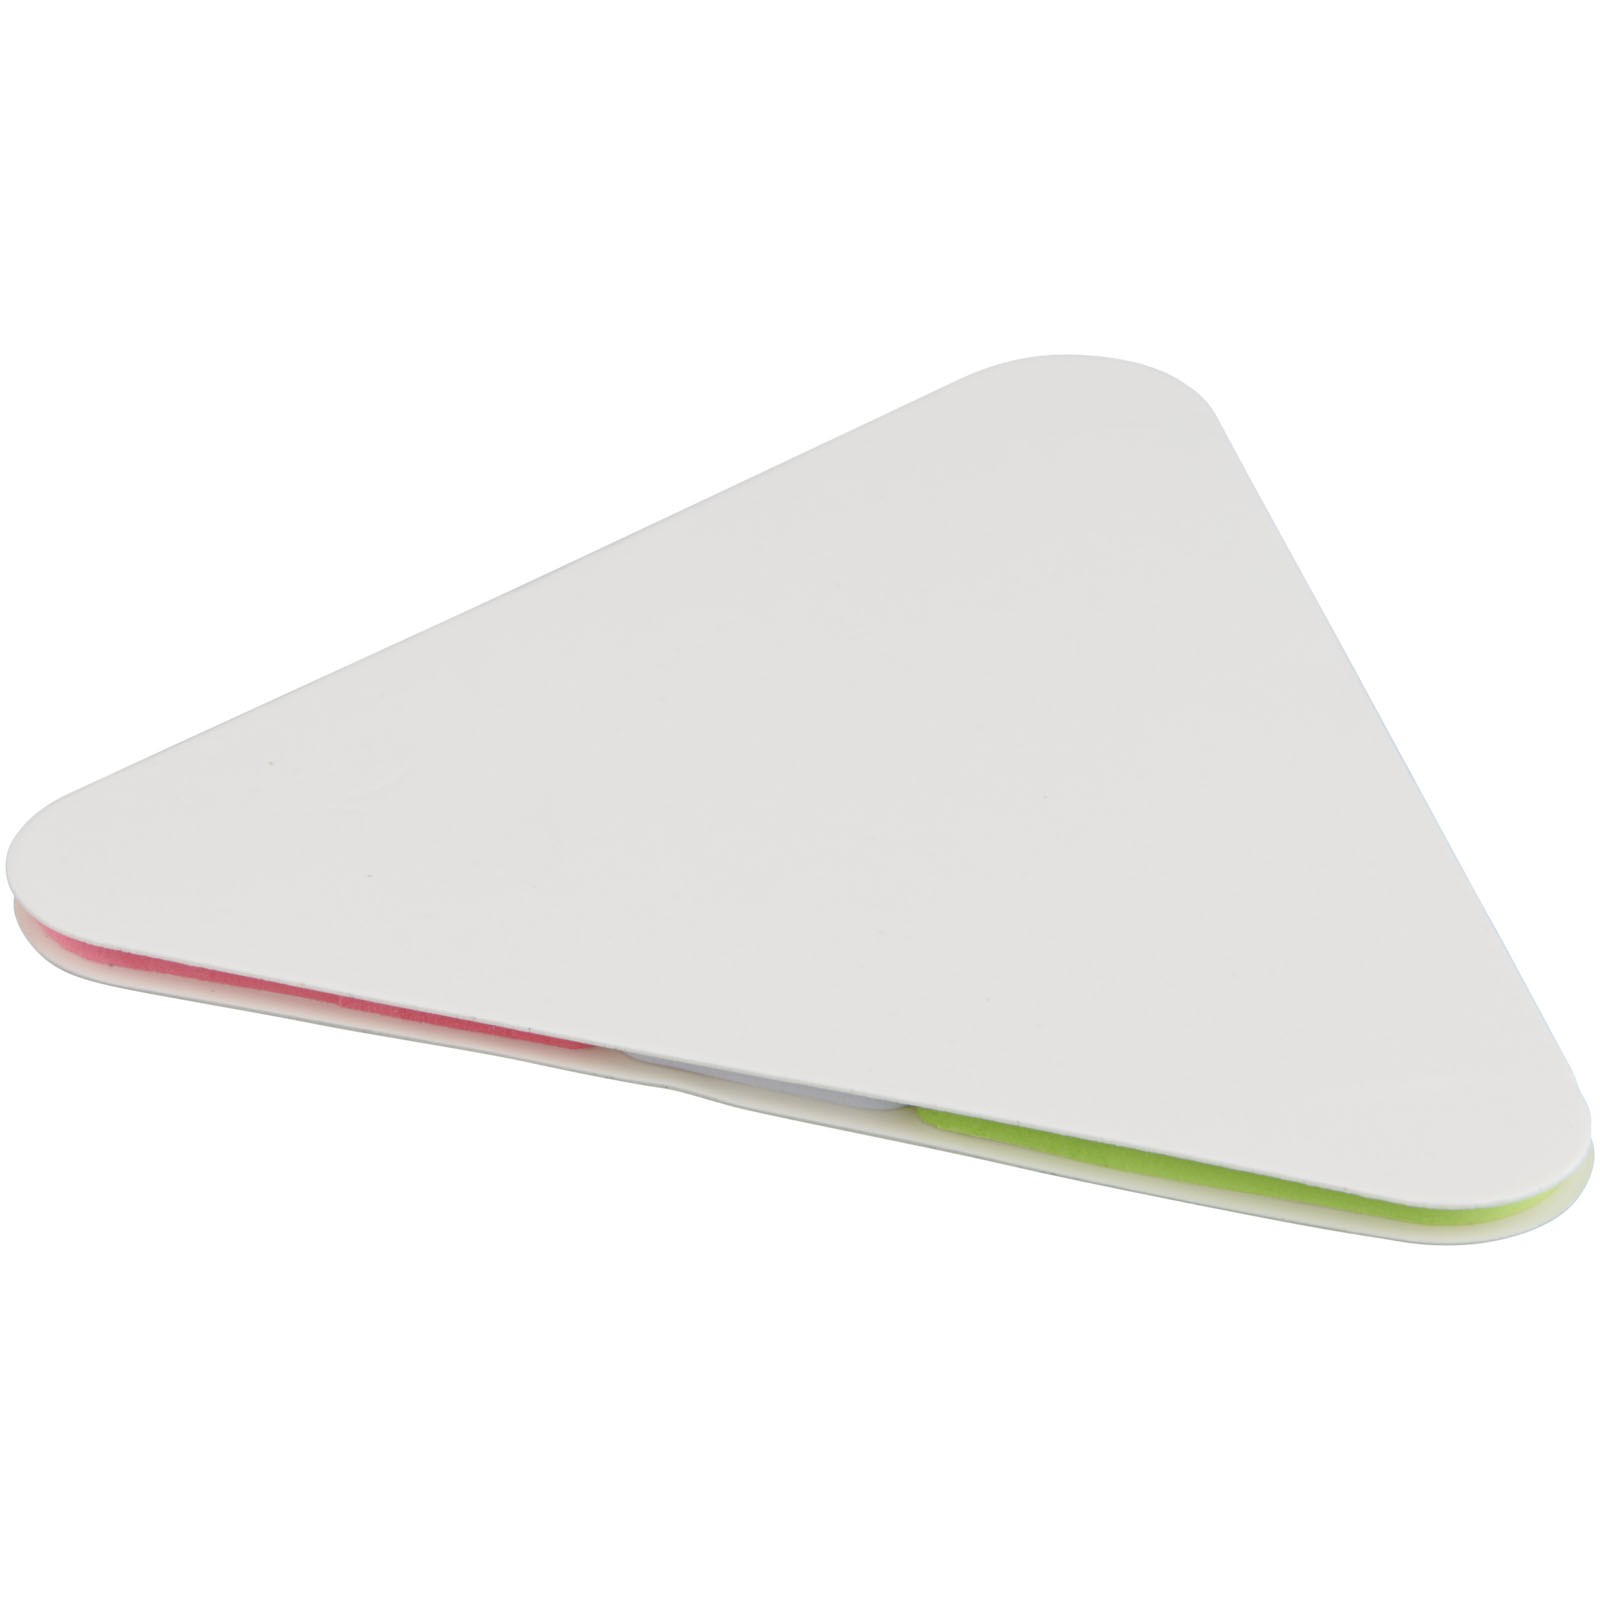 Samolepící štítky ve tvaru trojúhelníku - Bílá